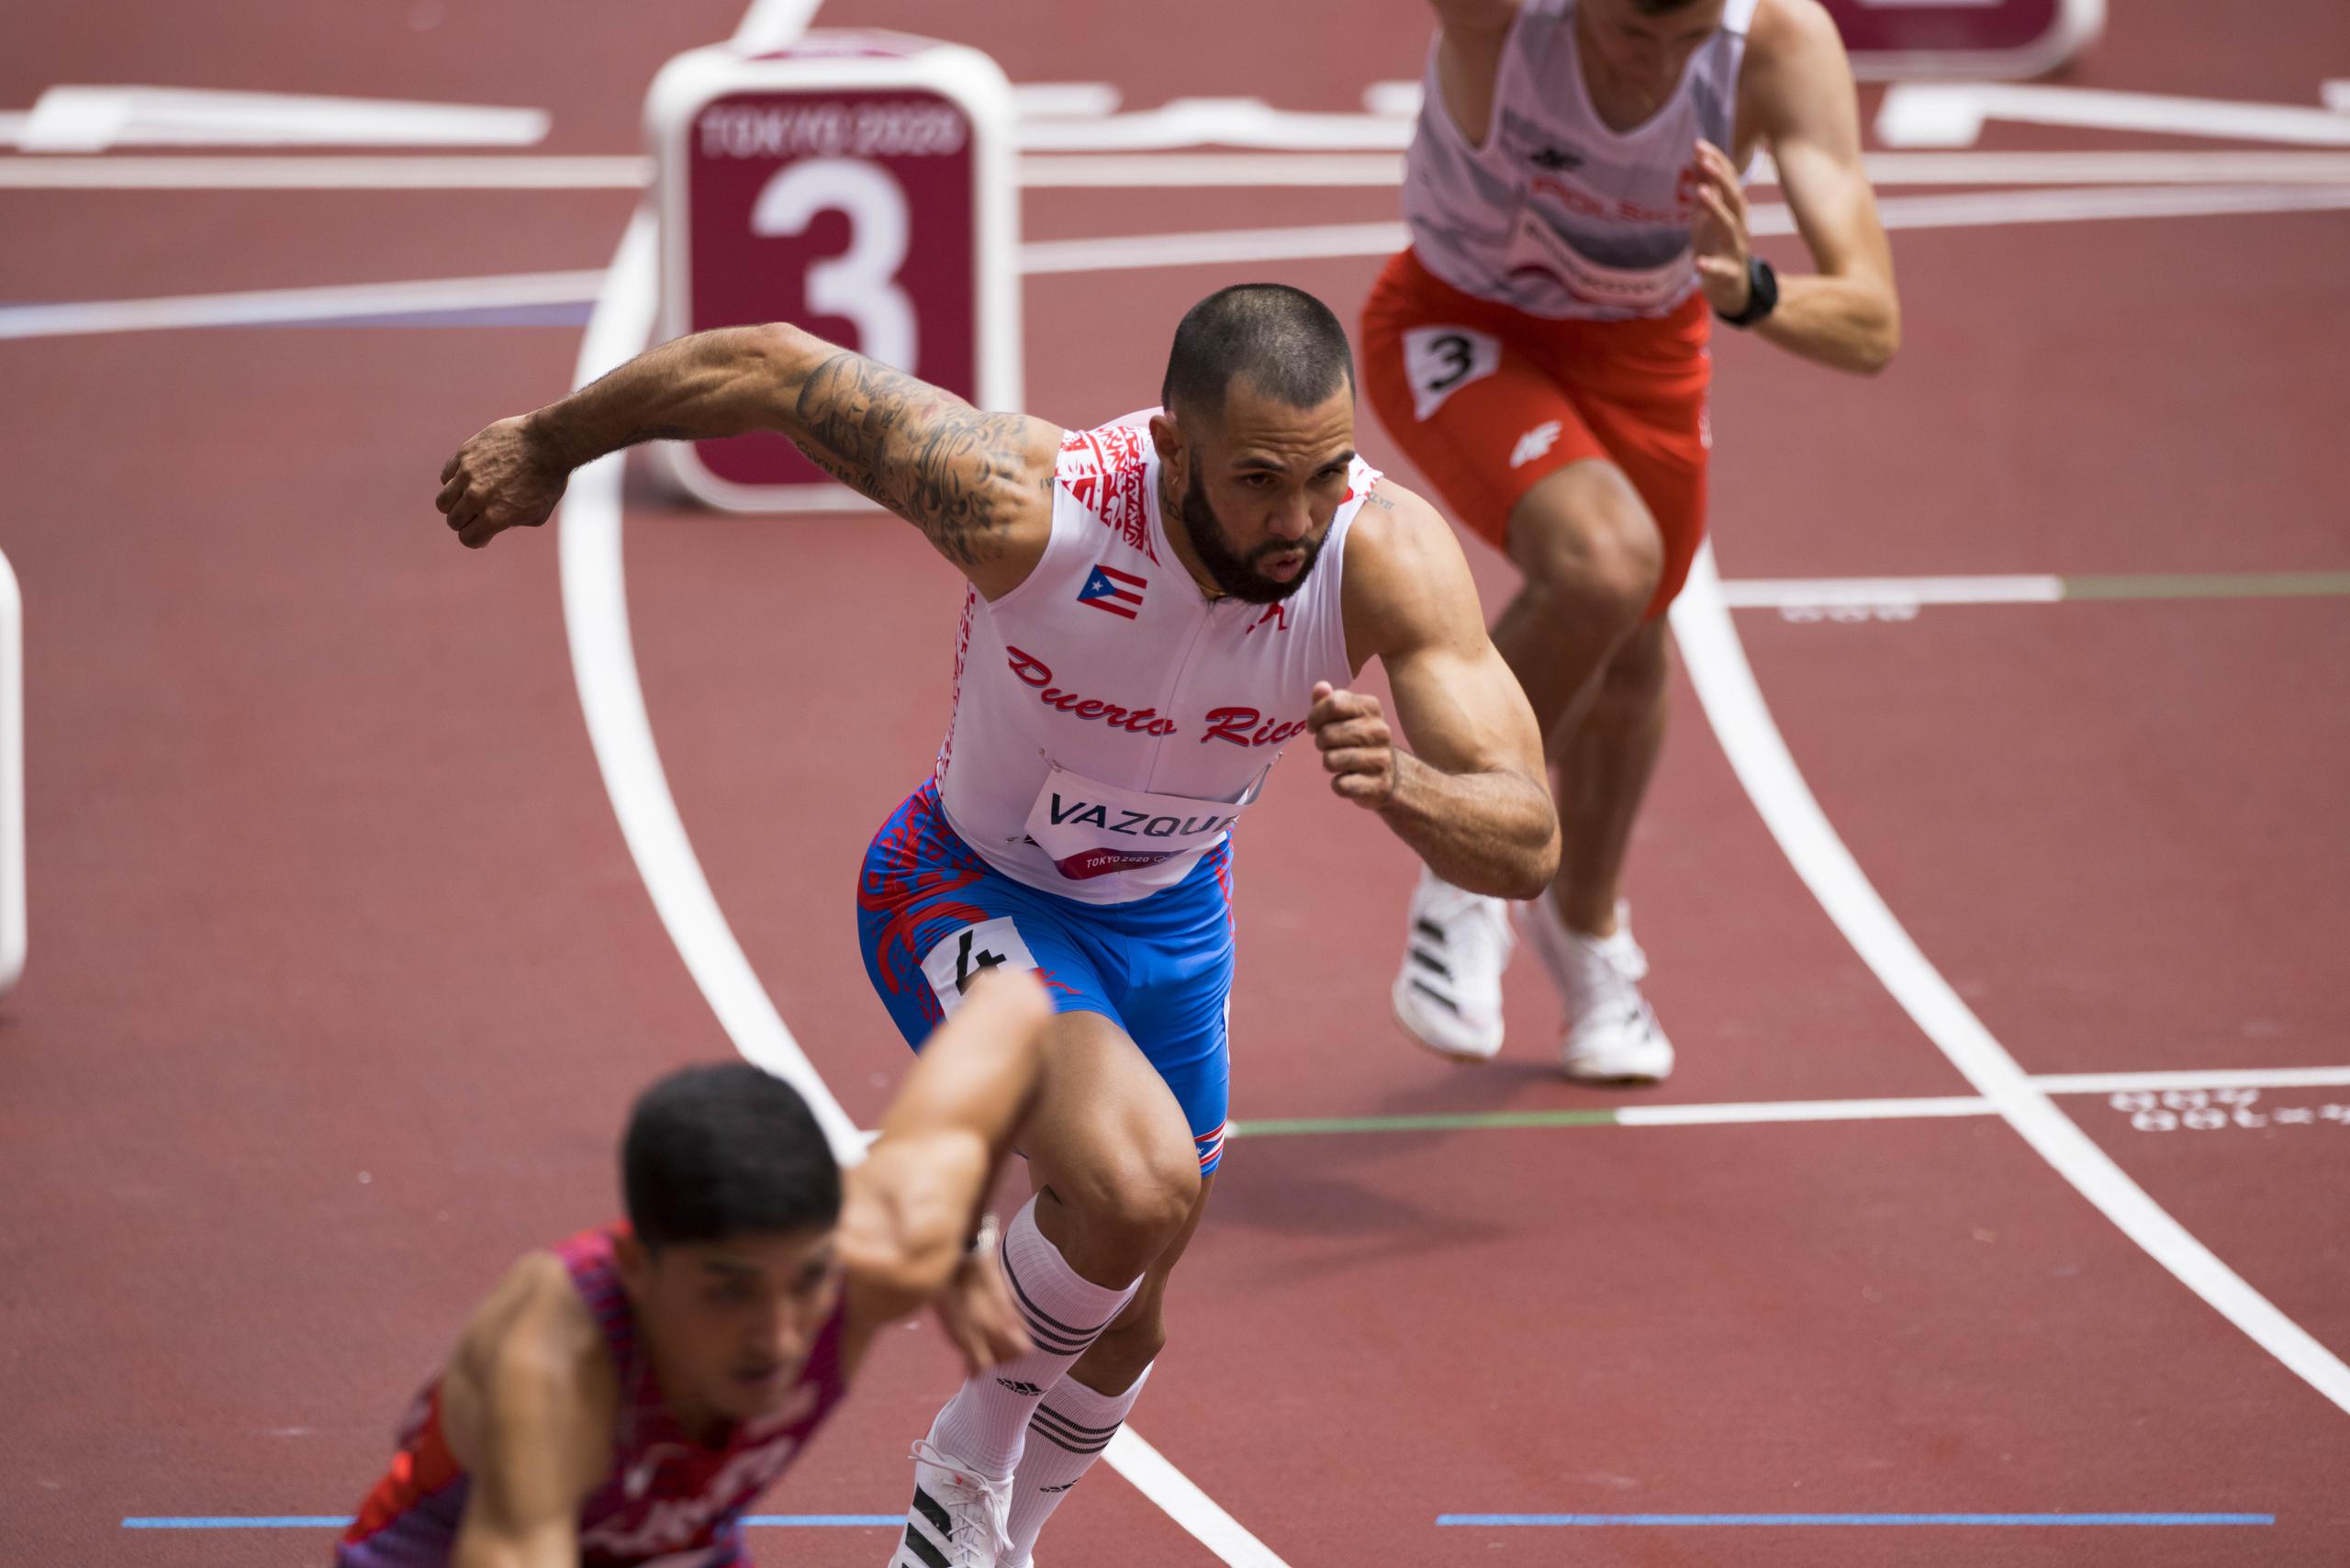 La prueba de 800 metros para París 2024 redujo el tiempo mínimo de clasificación, así como la cuota de participantes. El boricua Wesley Vázquez es un aspirante a clasificar.